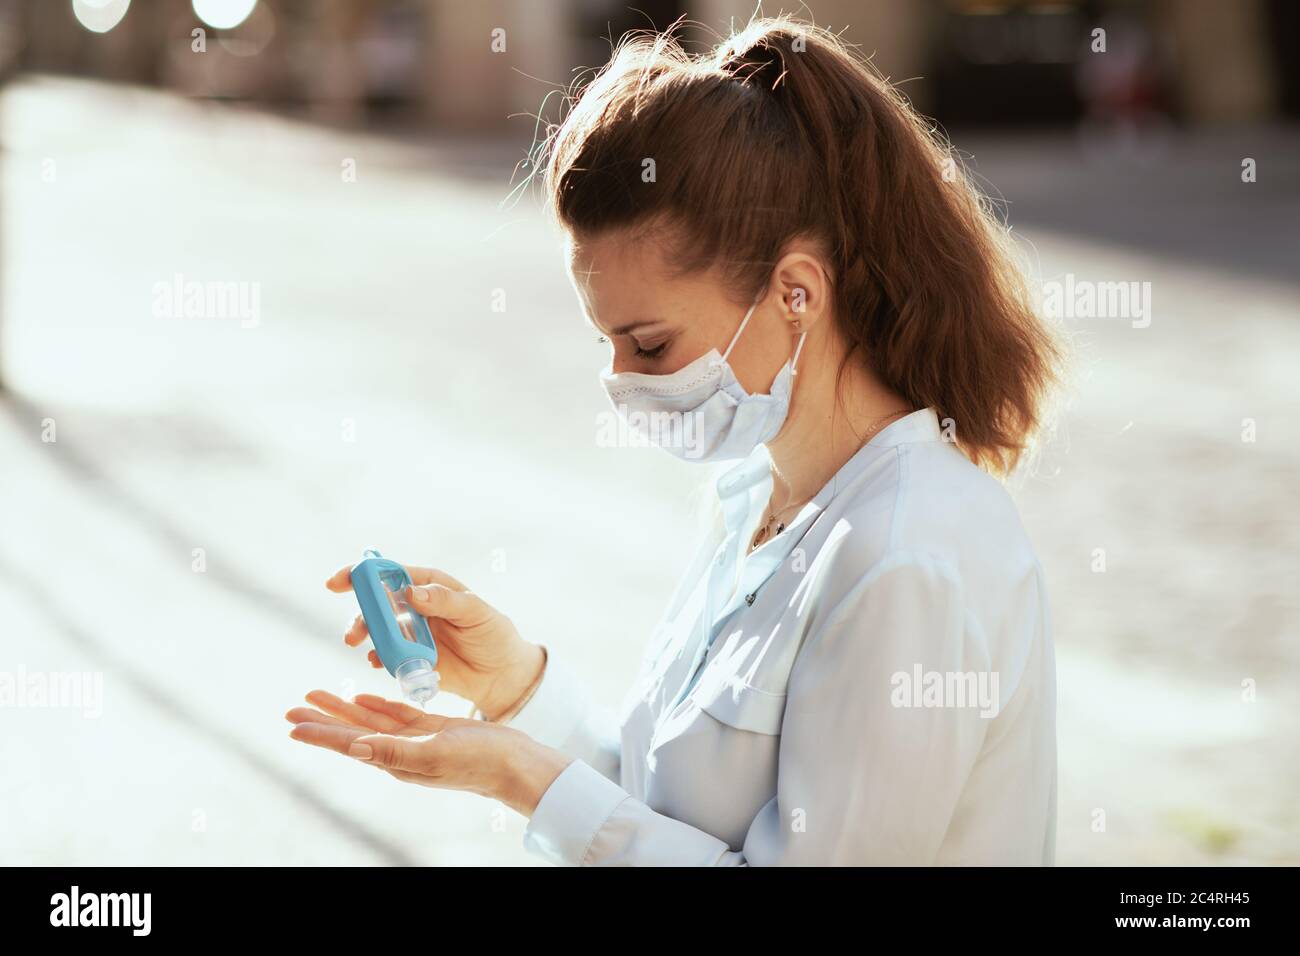 Leben während der Coronavirus-Pandemie. Junge Frau in blauer Bluse mit medizinischer Maske Desinfektion Hände mit Desinfektionsmittel im Freien in der Stadt. Stockfoto